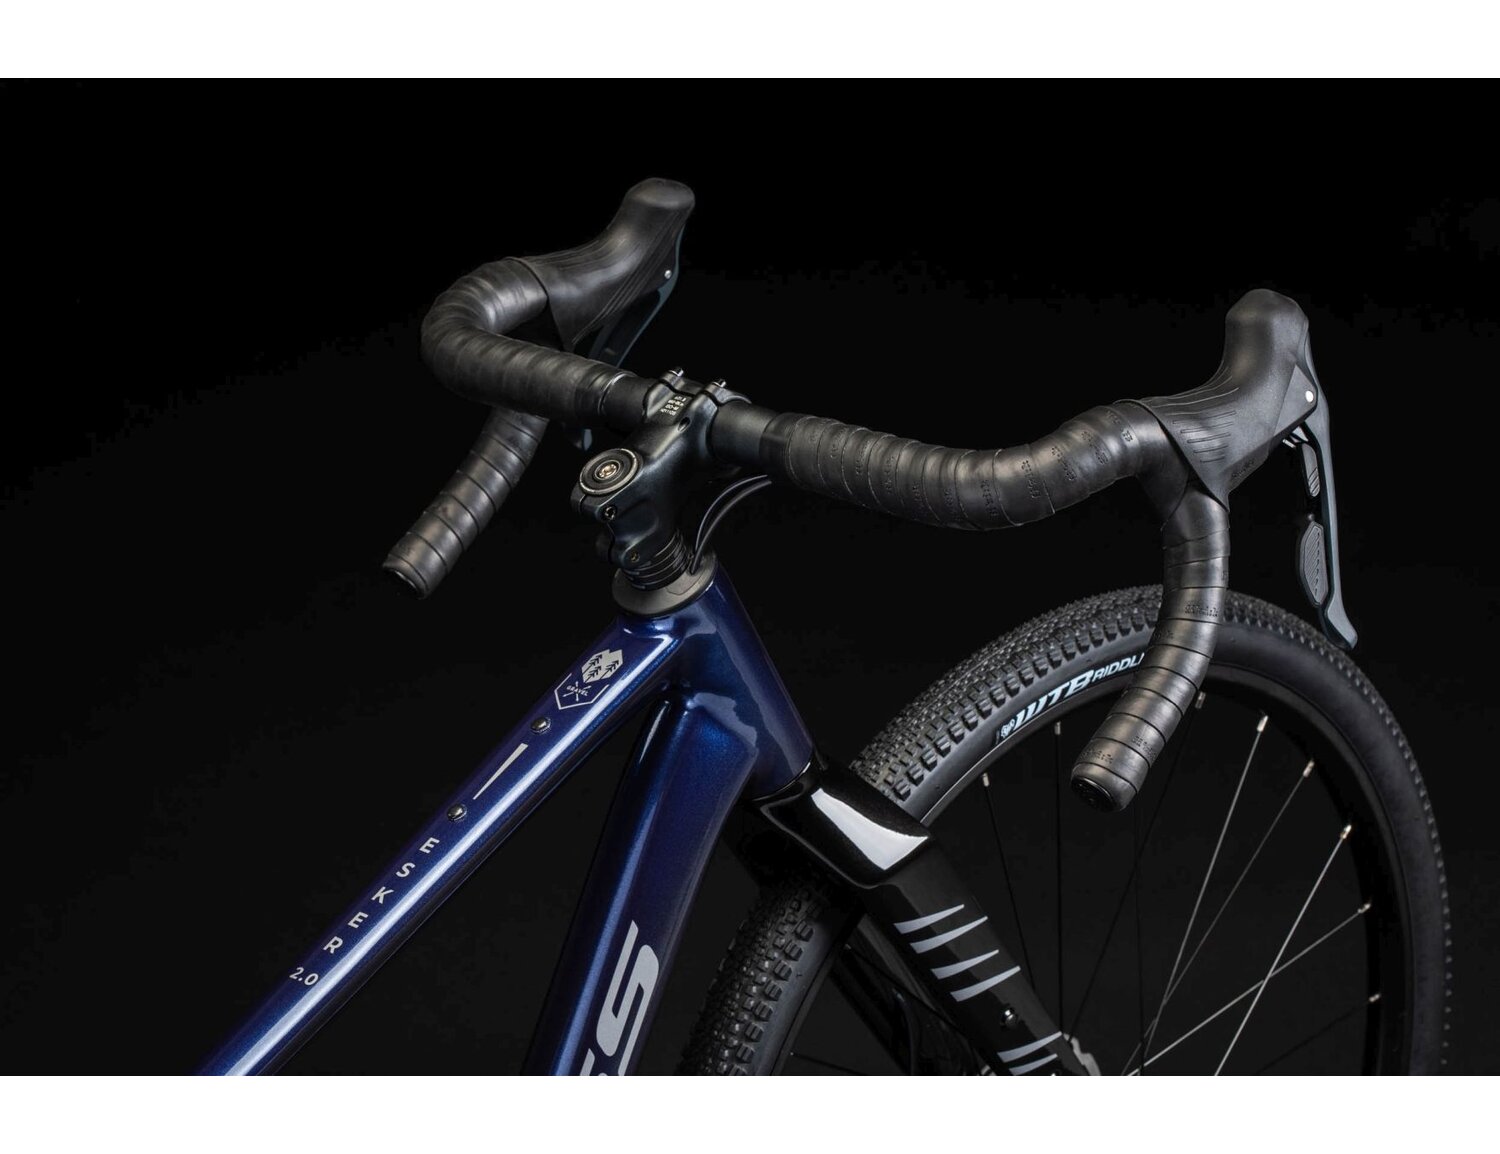  Carbonowy widelec, aluminiowa rama oraz opony WTB RIDDLER COMP 700X45C w rowerze gravelowym Kross Esker 2.0 